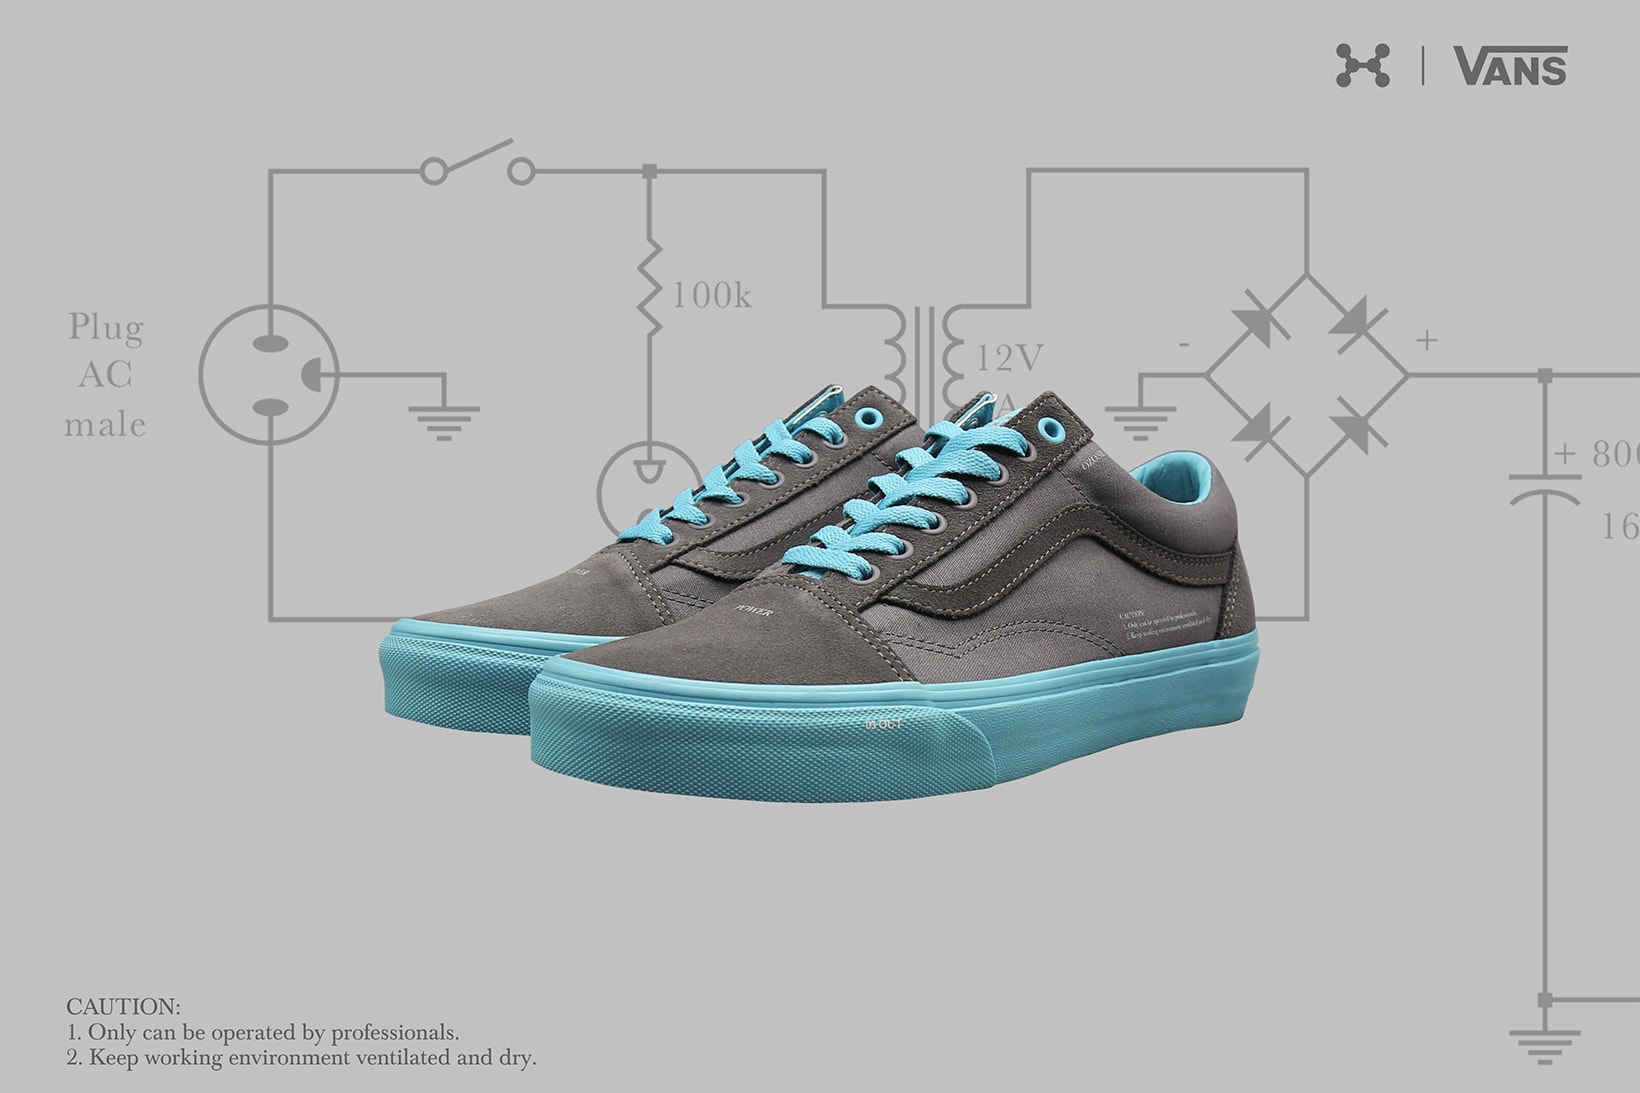 C2H4 Vans Ozone Collaboration old skool era may 2018 release date info drop sneakers shoes footwear